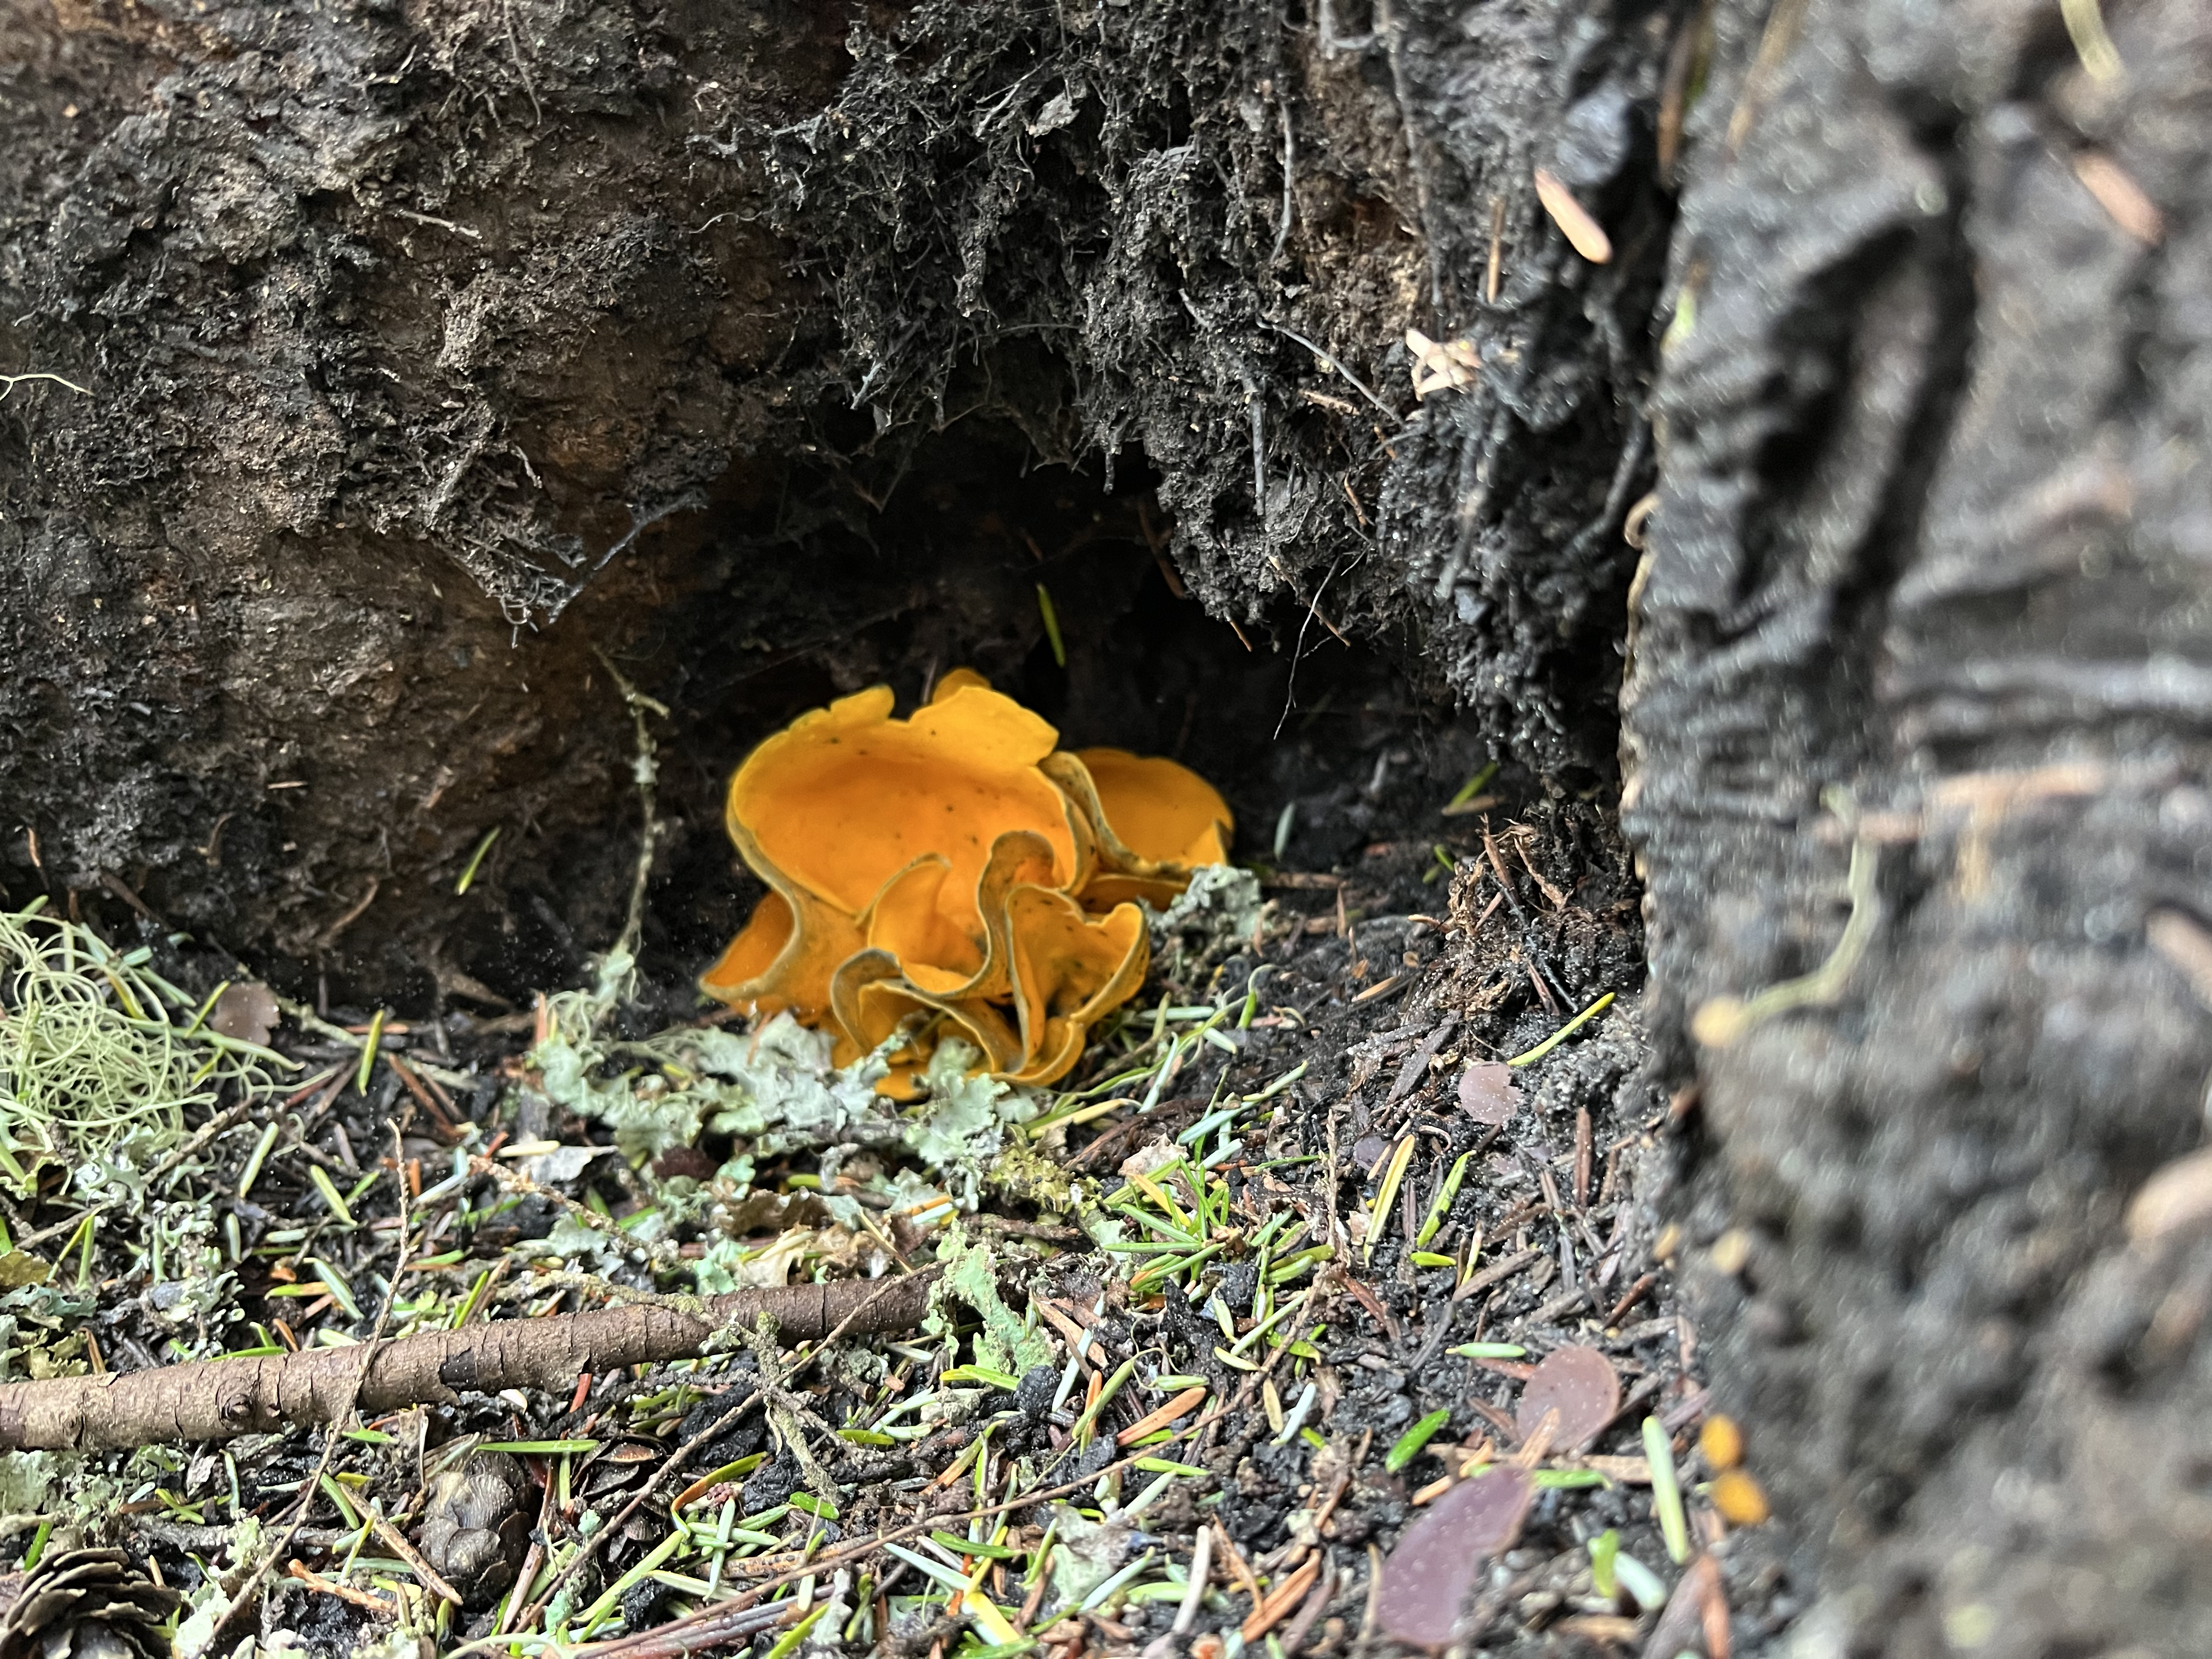 Mushroom under a tree